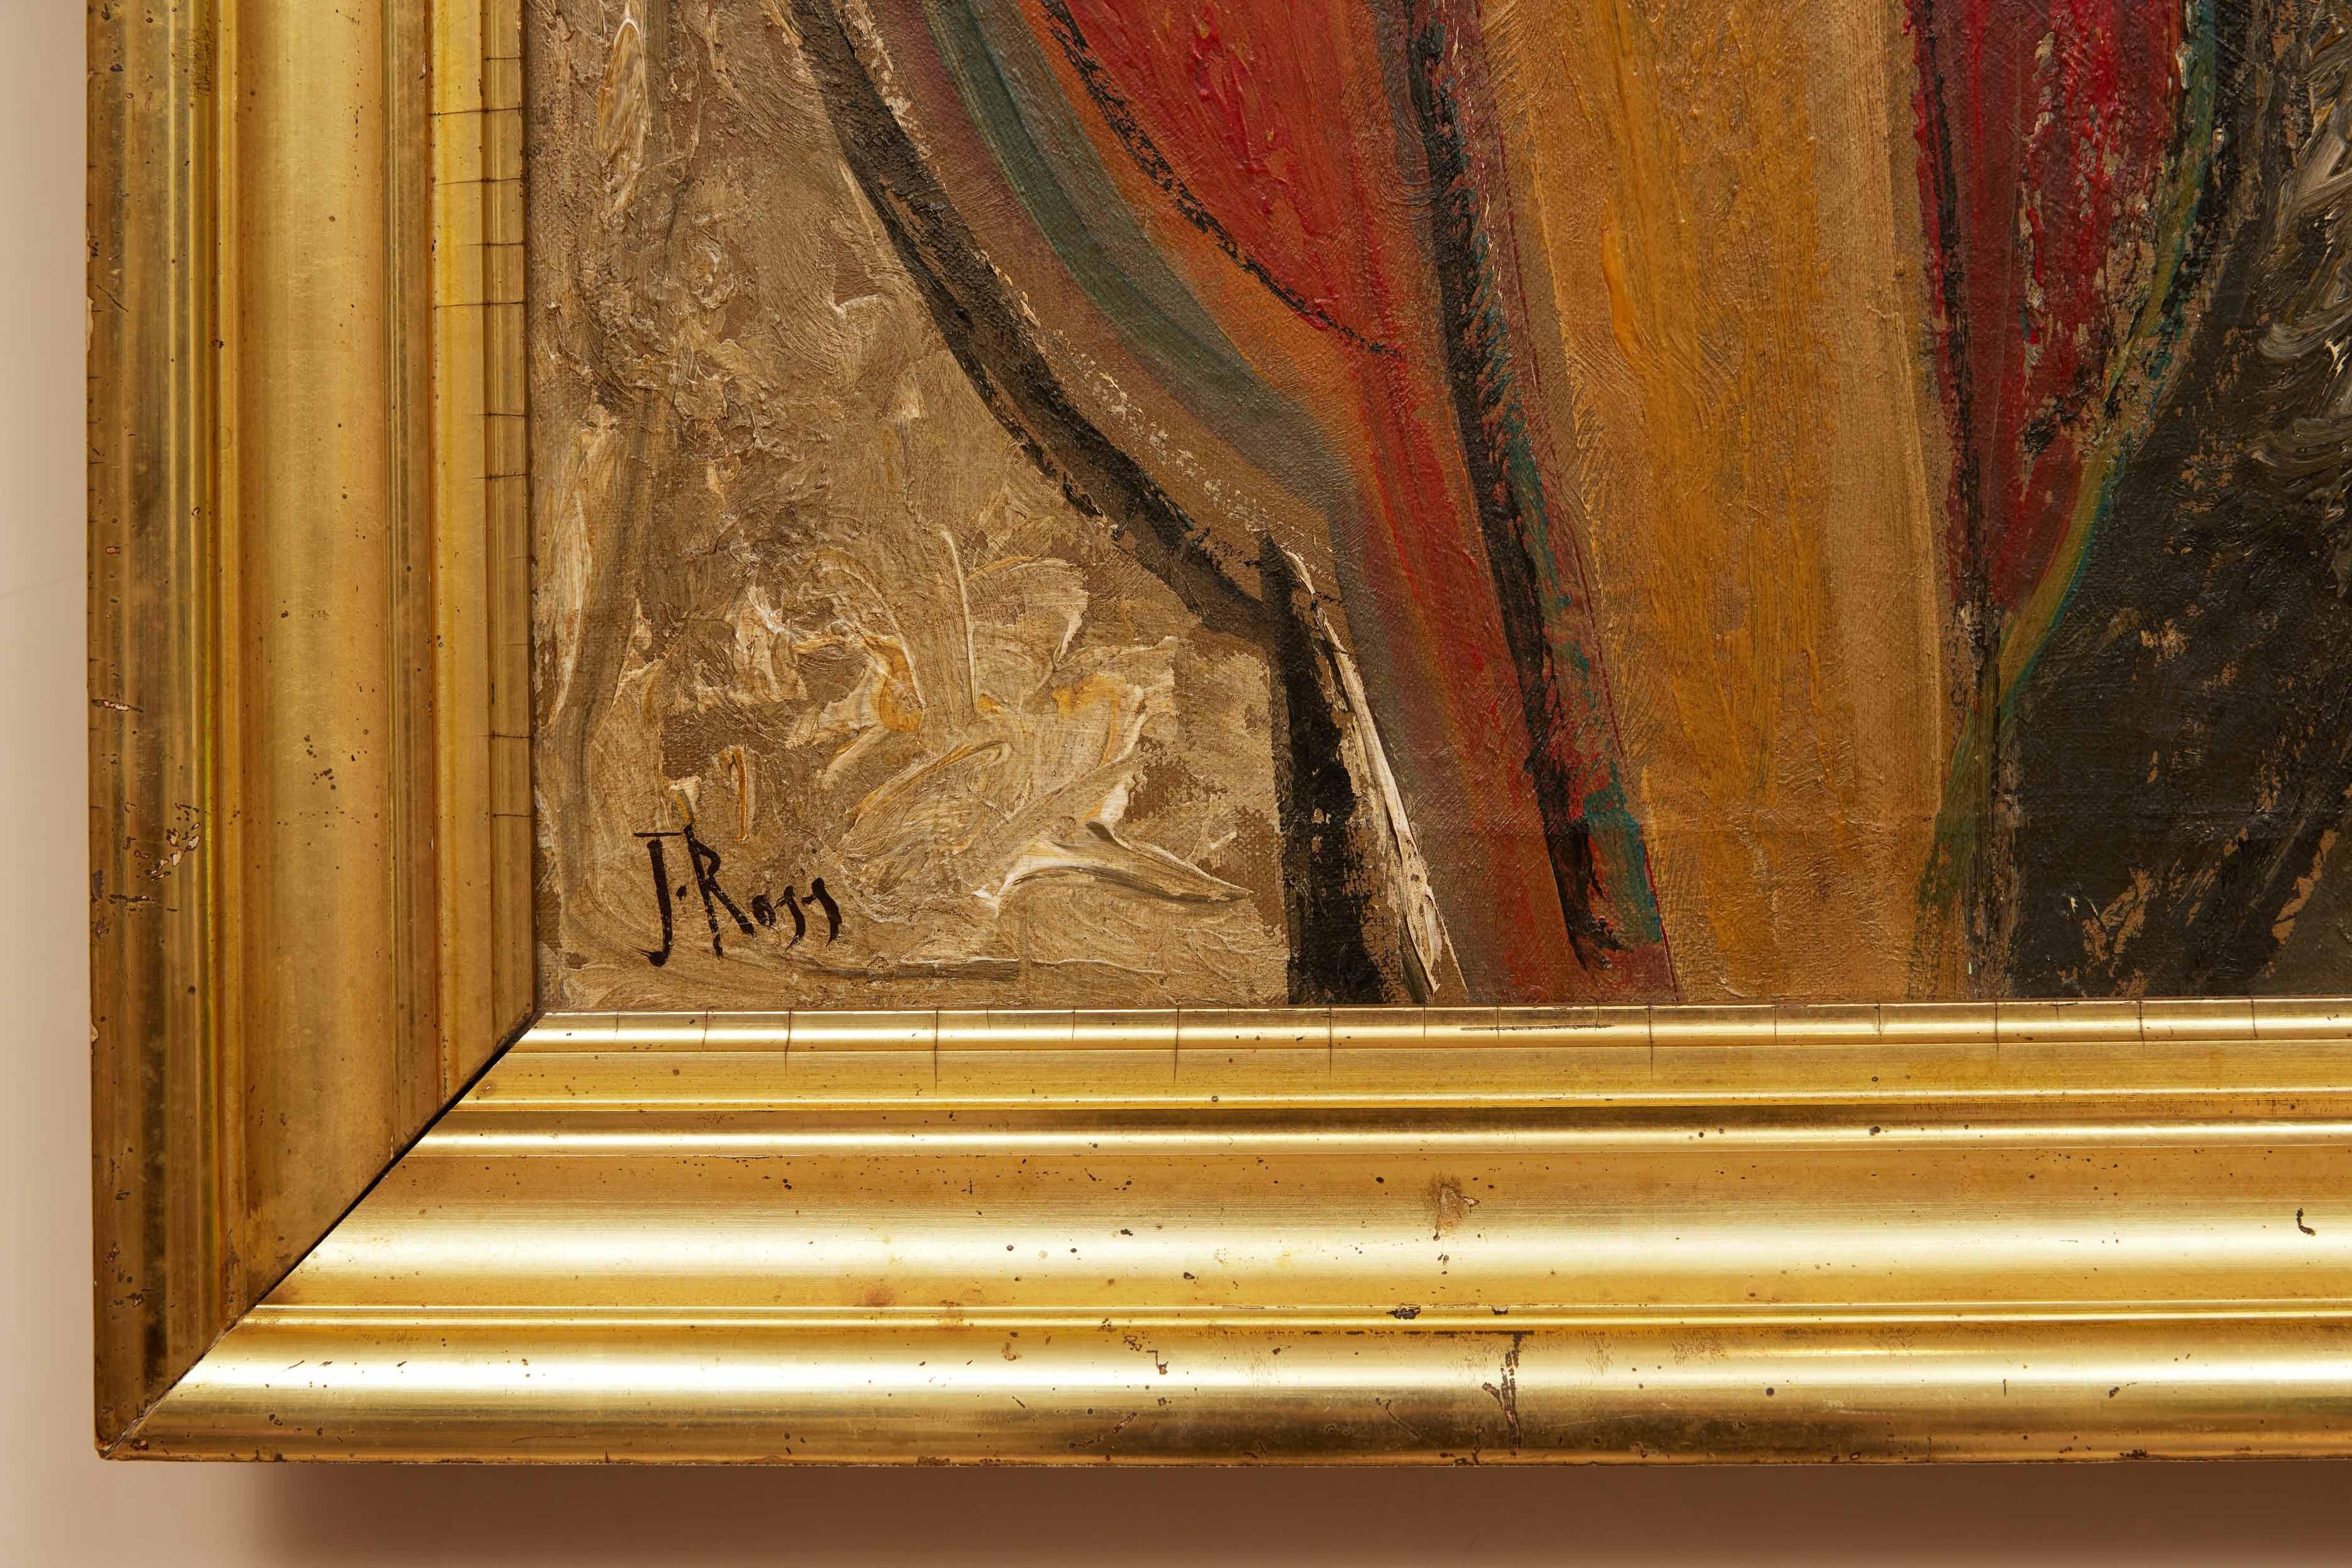 Kubistische Figur auf Leinwand von John Ross (1921-2017), gekauft in Paris, in einem vergoldeten Rahmen aus dem 19. 

John Ross, Maler, Grafiker, Autor und Pädagoge, wurde am 25. September 1921 in New York City geboren. Er erhielt einen BFA von der